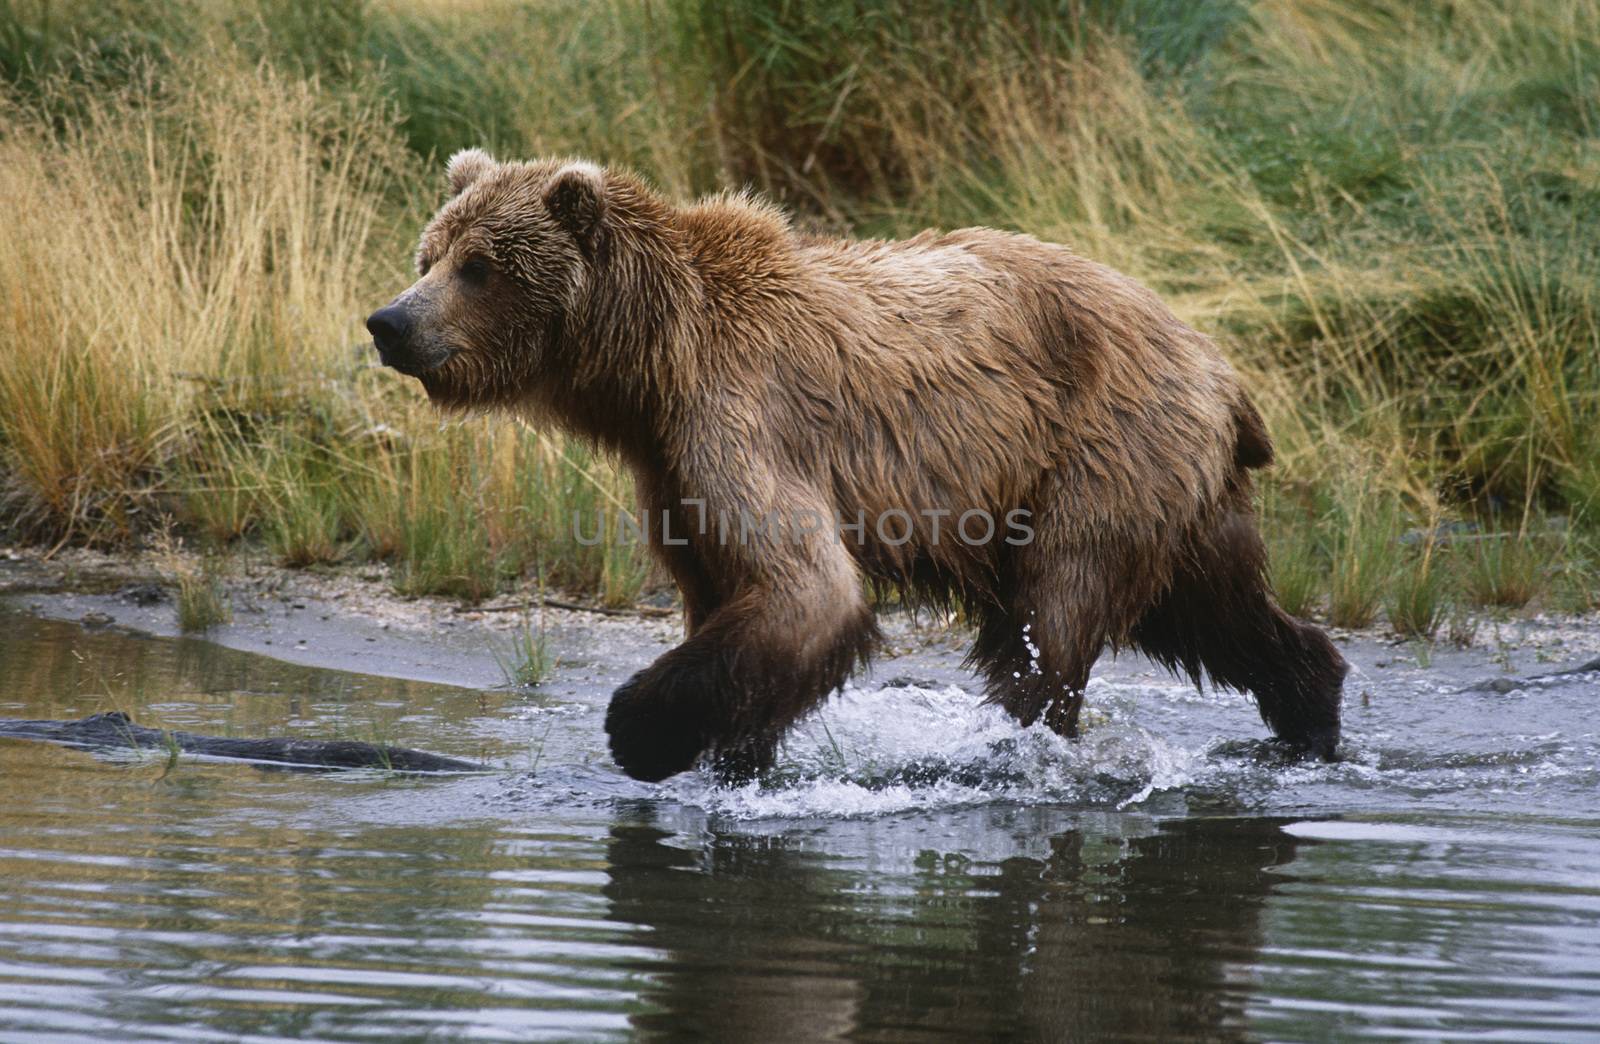 USA, Alaska, Katmai National Park, Brown Bear running across water, side view by Jaanaaa